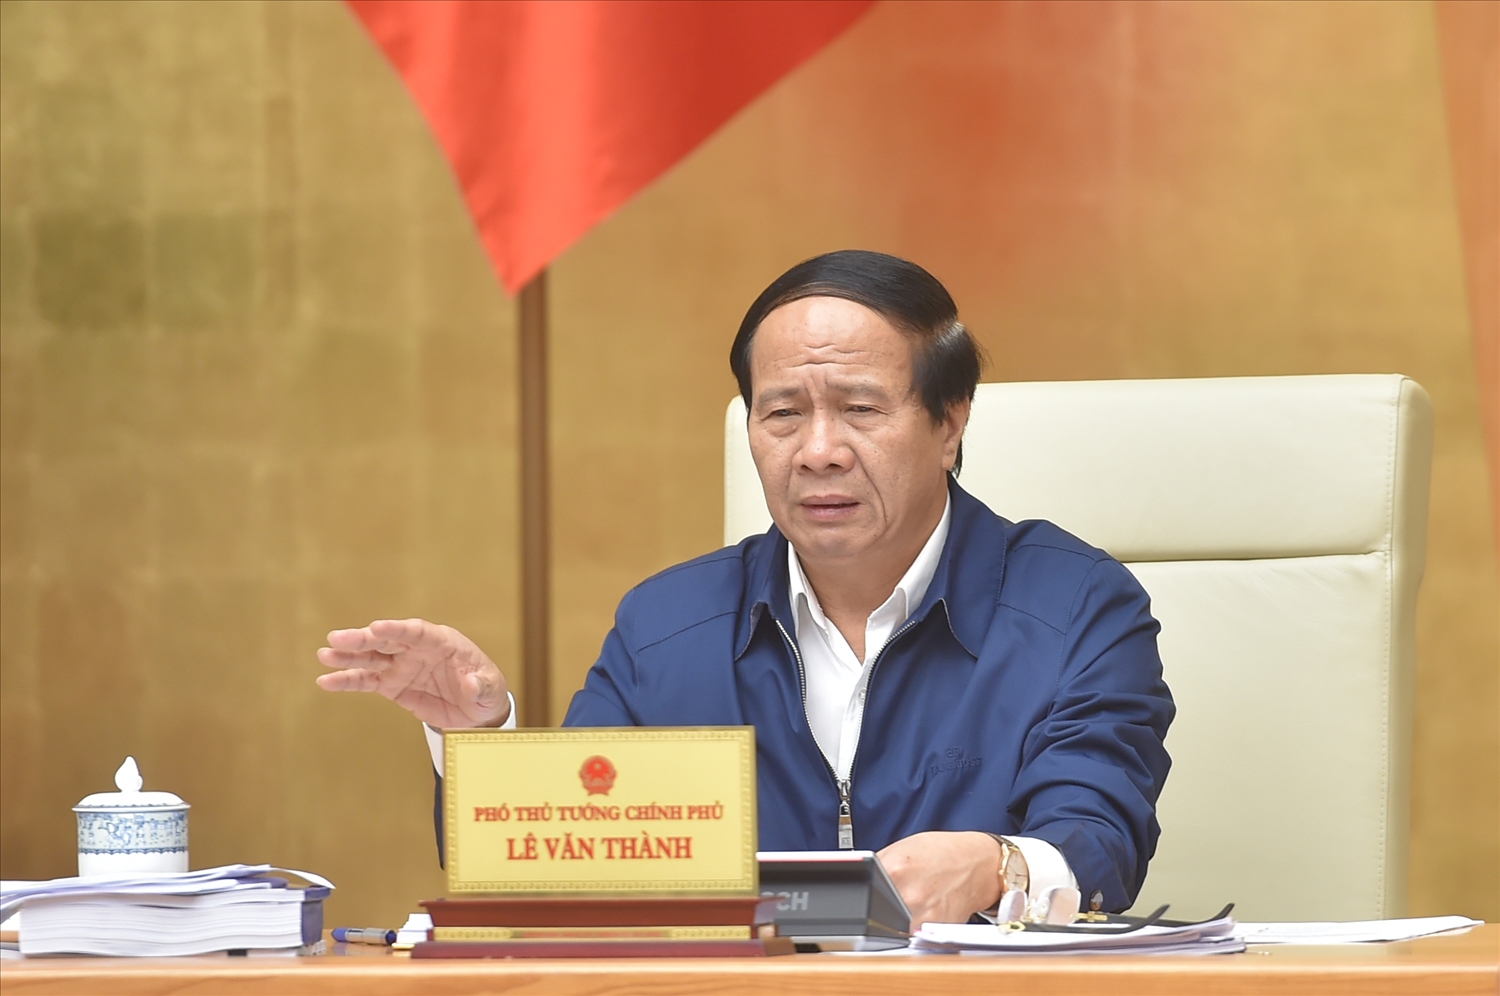 Phó Thủ tướng Lê Văn Thành: Quy hoạch vùng ĐBSCL là công cụ quan trọng hàng đầu để định hướng đầu tư phát triển nhanh và bền vững - Ảnh: VGP/Đức Tuân